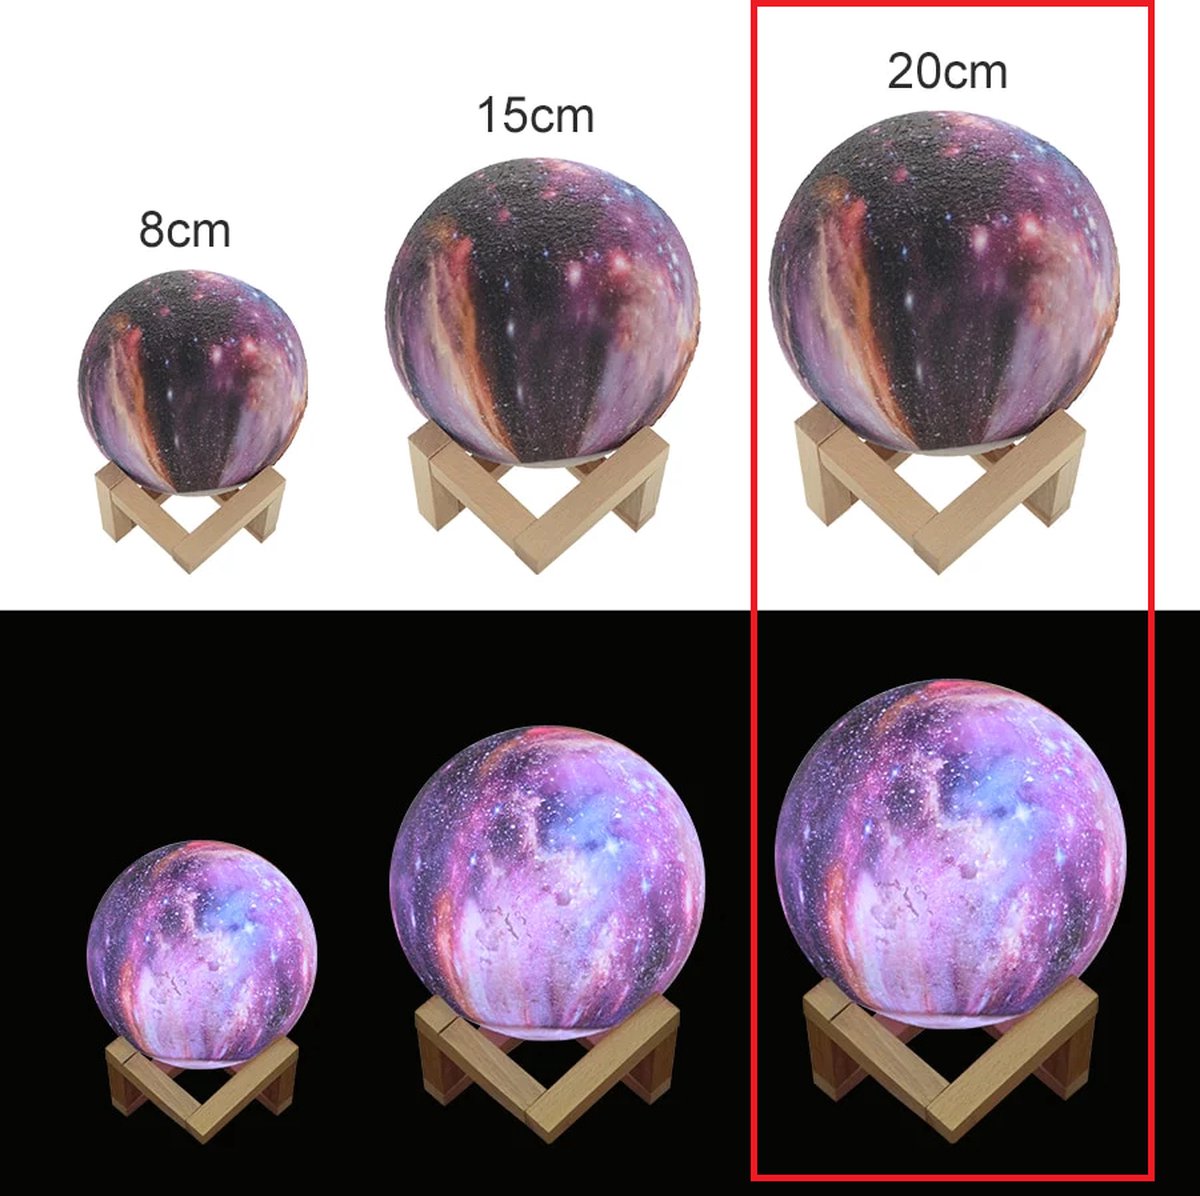 AO® Galaxy Lamp / Maan Lamp - Tafellamp - 16 Kleuren - 9 dimstanden - Nachtlamp - 3D geprint - Duurzaam materiaal - Tafellamp - Nachtlamp - Led kleuren met afstands